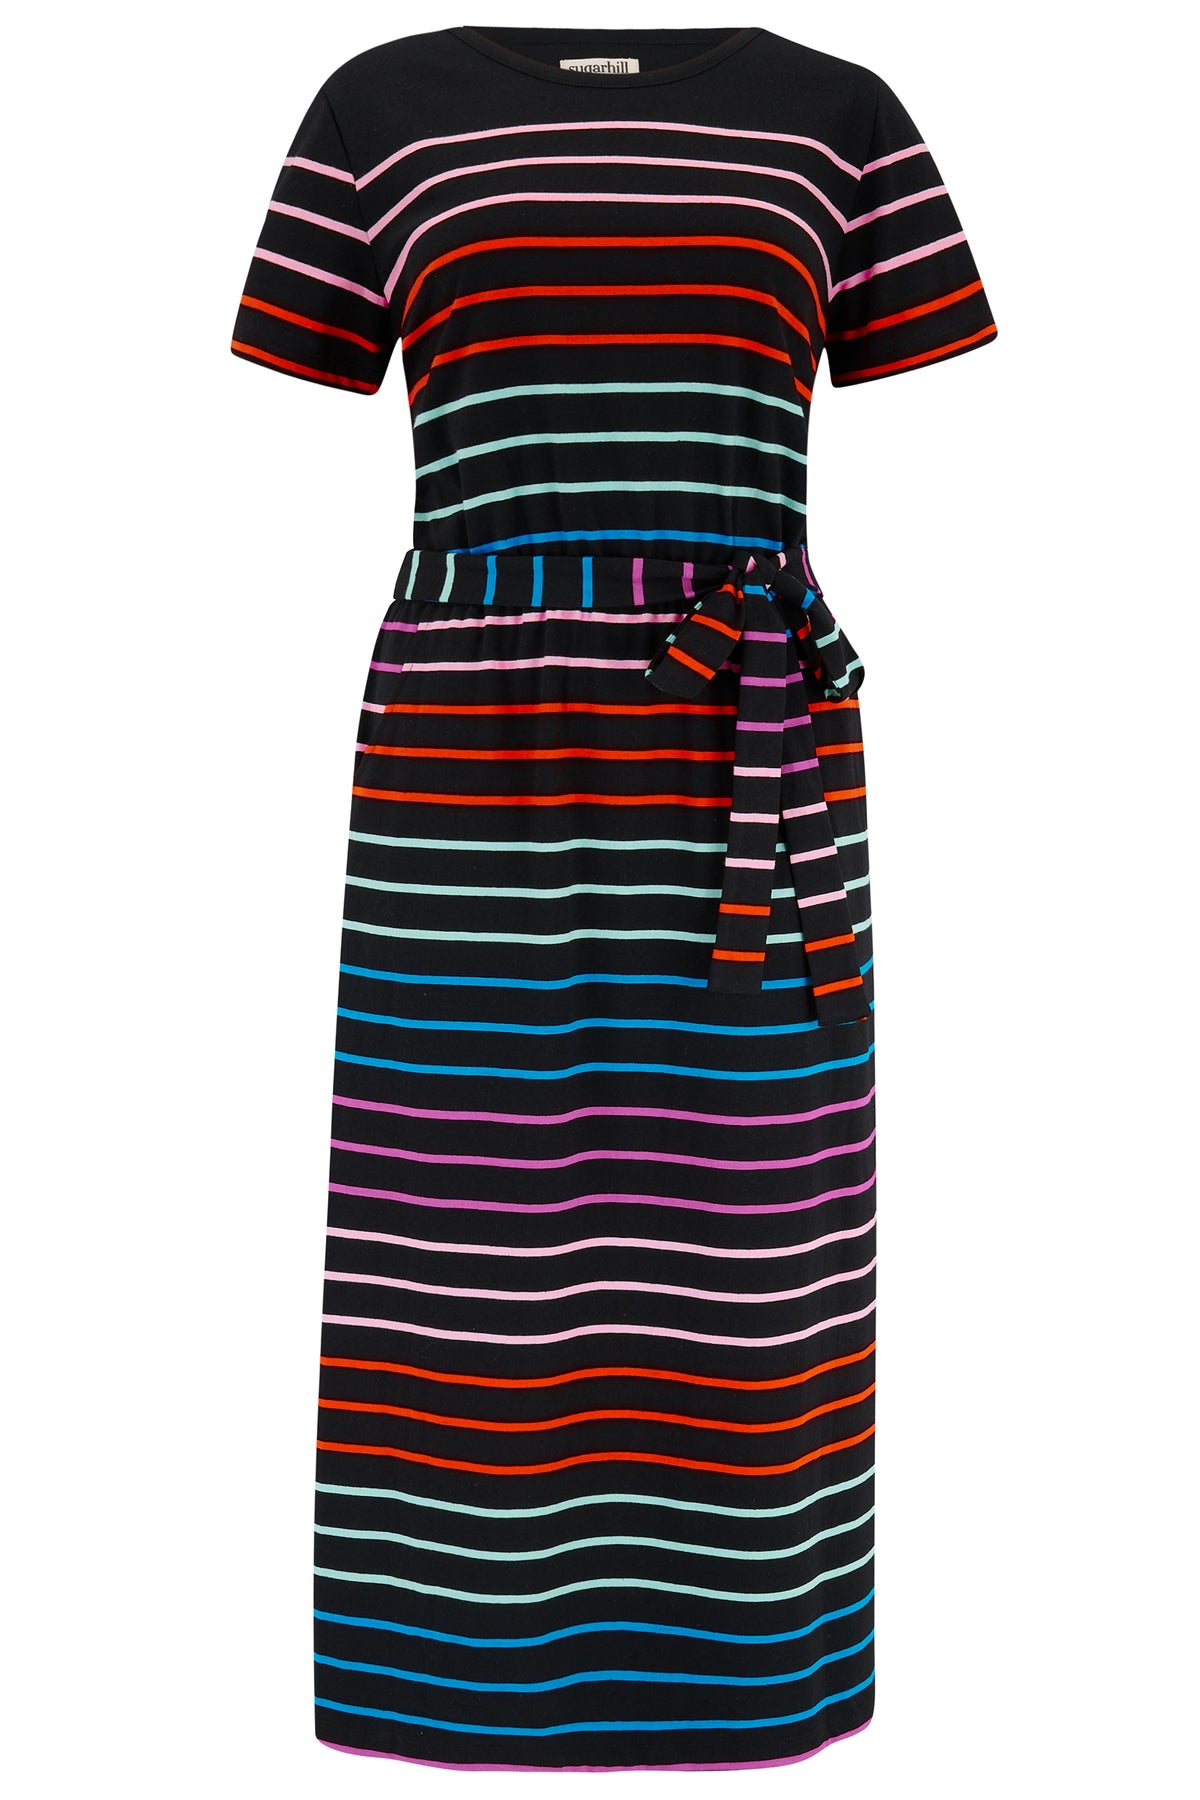 Sugarhill - Flissy Jersey Midi Dress - Black Stripe